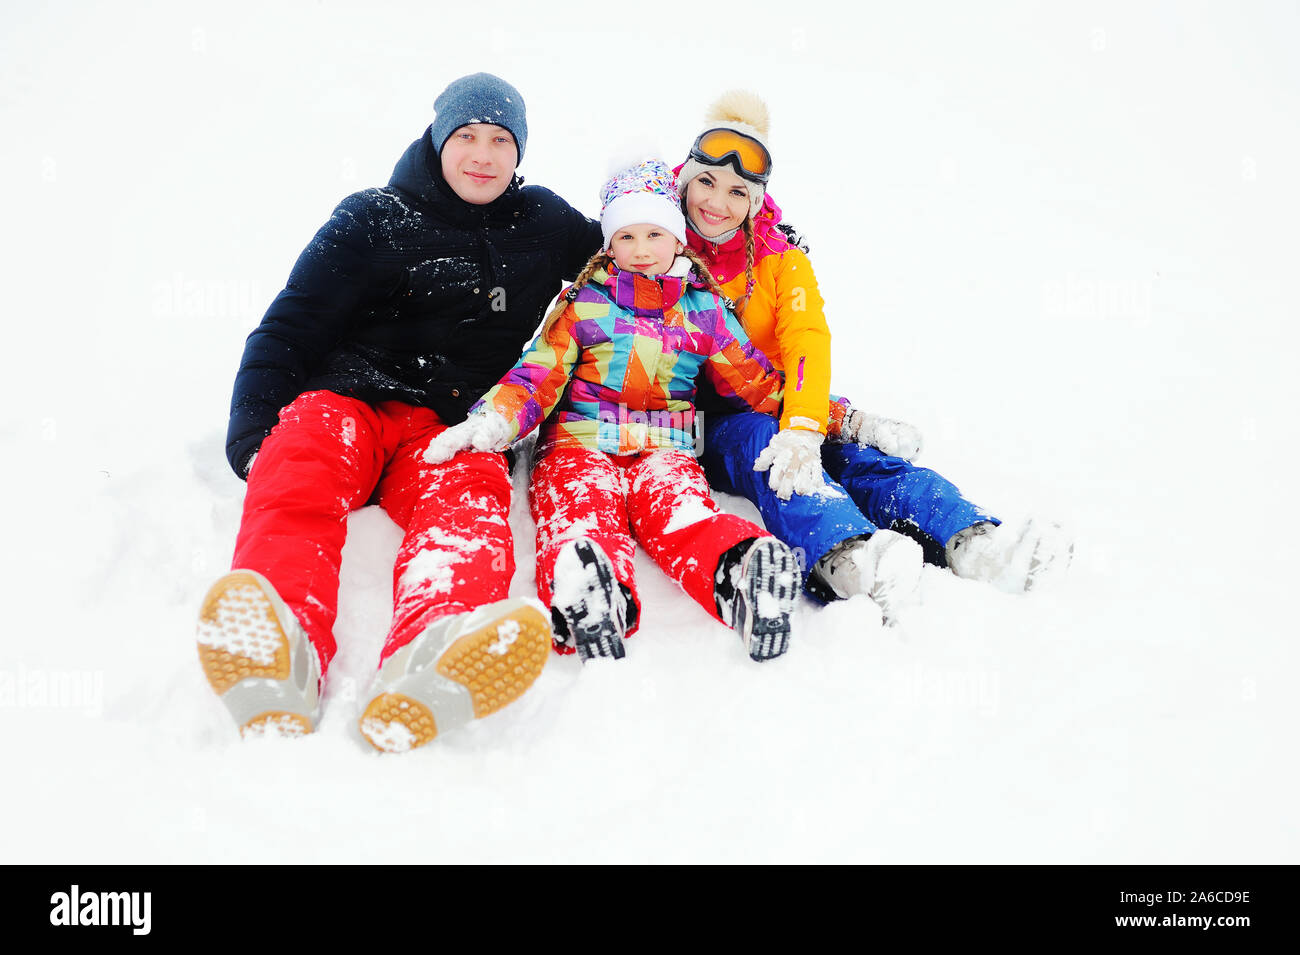 Eine junge Familie - Mutter, Vater und Tochter in hellen Skianzuege sitzen zusammen im Schnee Lachen und Lächeln Stockfoto